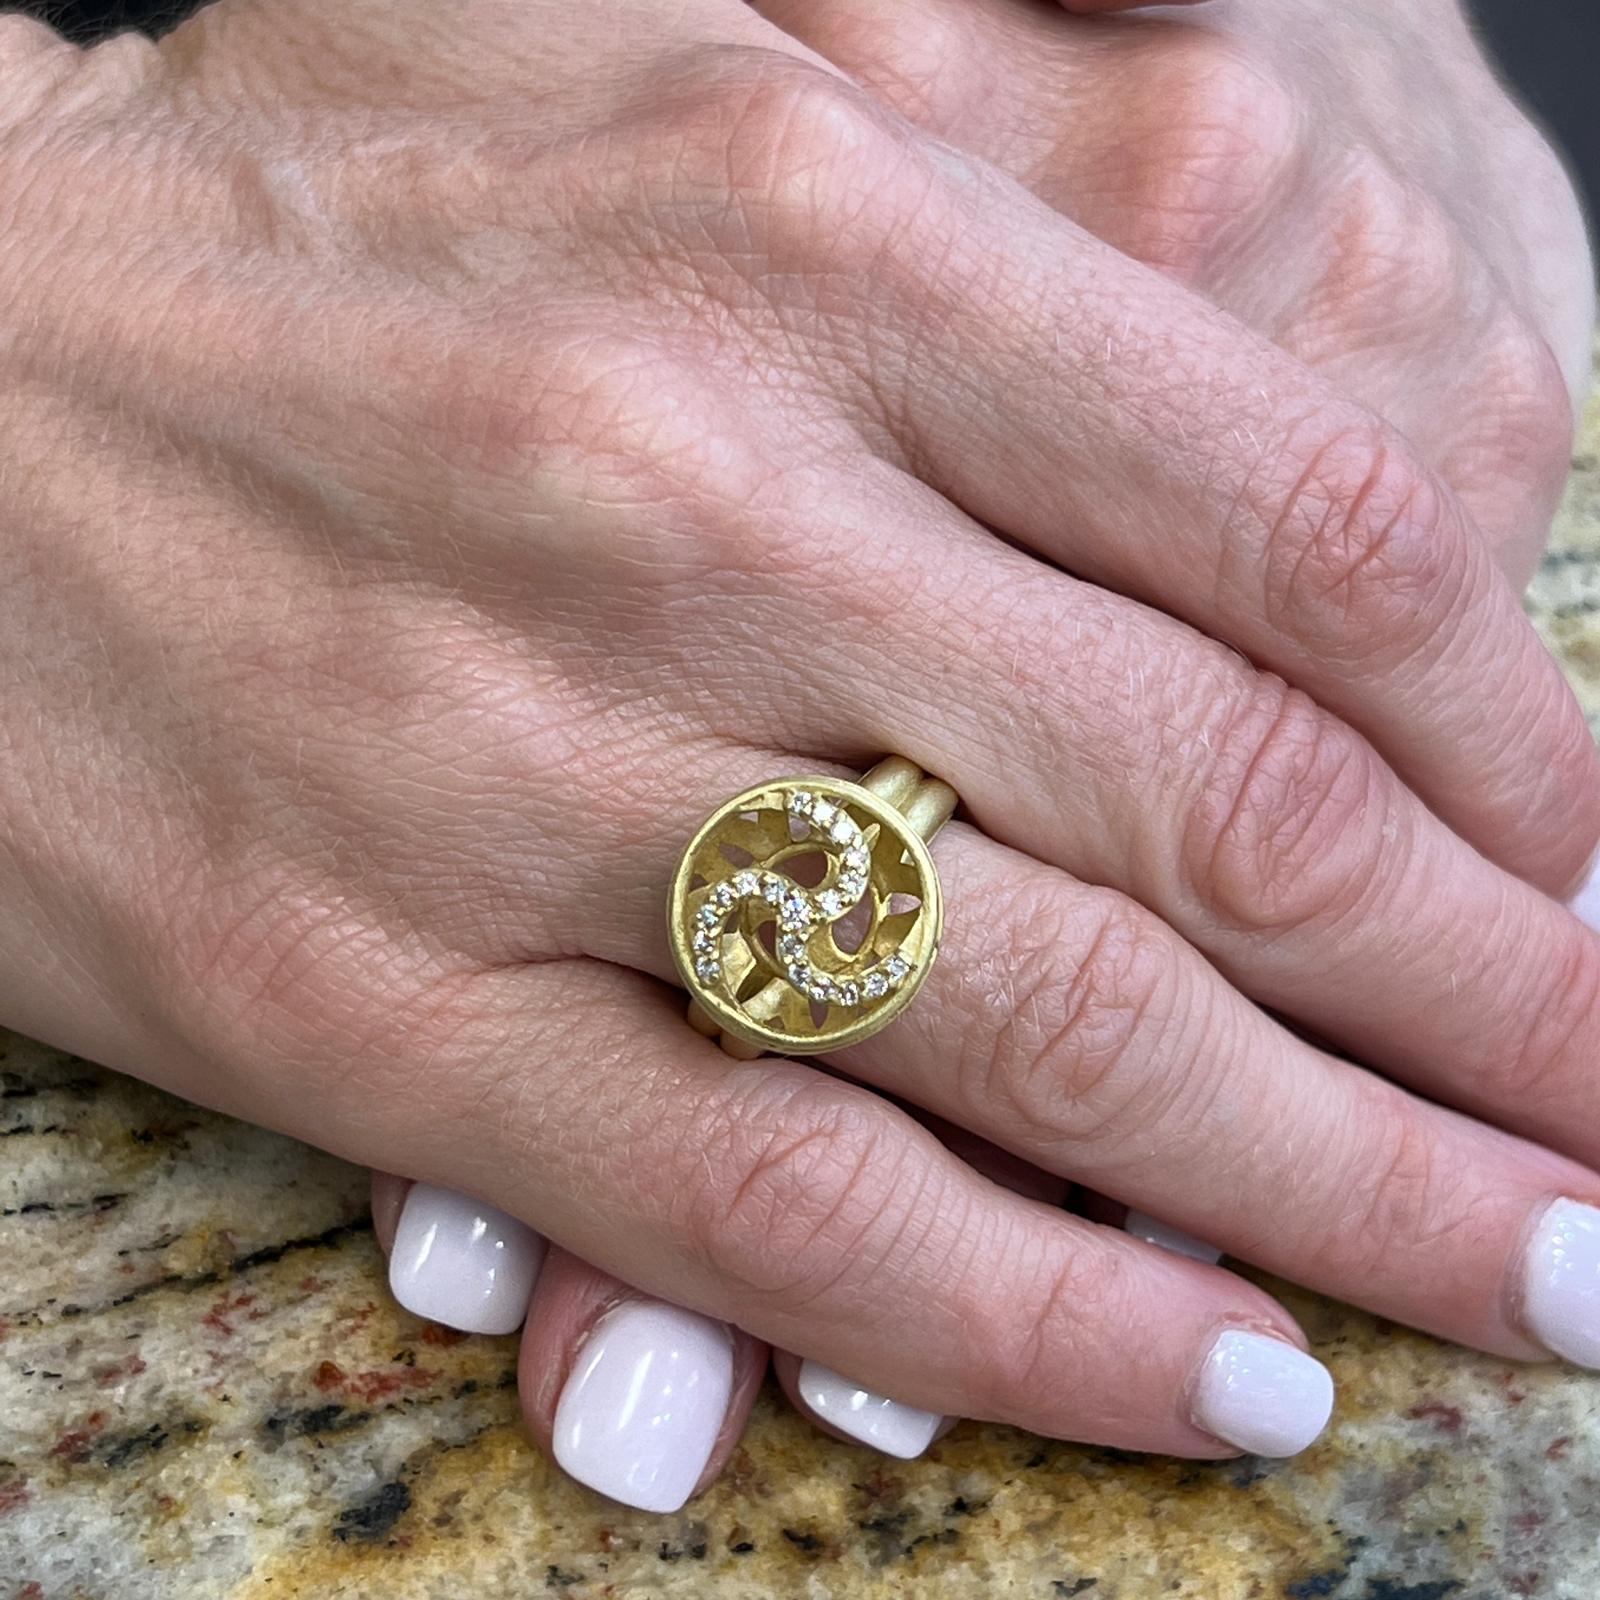 Diamantring des Designers Slane & Slane aus gebürstetem 18-karätigem Gelbgold. Der Ring enthält 19 runde Diamanten im Brillantschliff mit einem Gewicht von ca. 0,40 CTW und den Farb- und Reinheitsgraden G-H und VS. Die Spitze misst 16 mm im